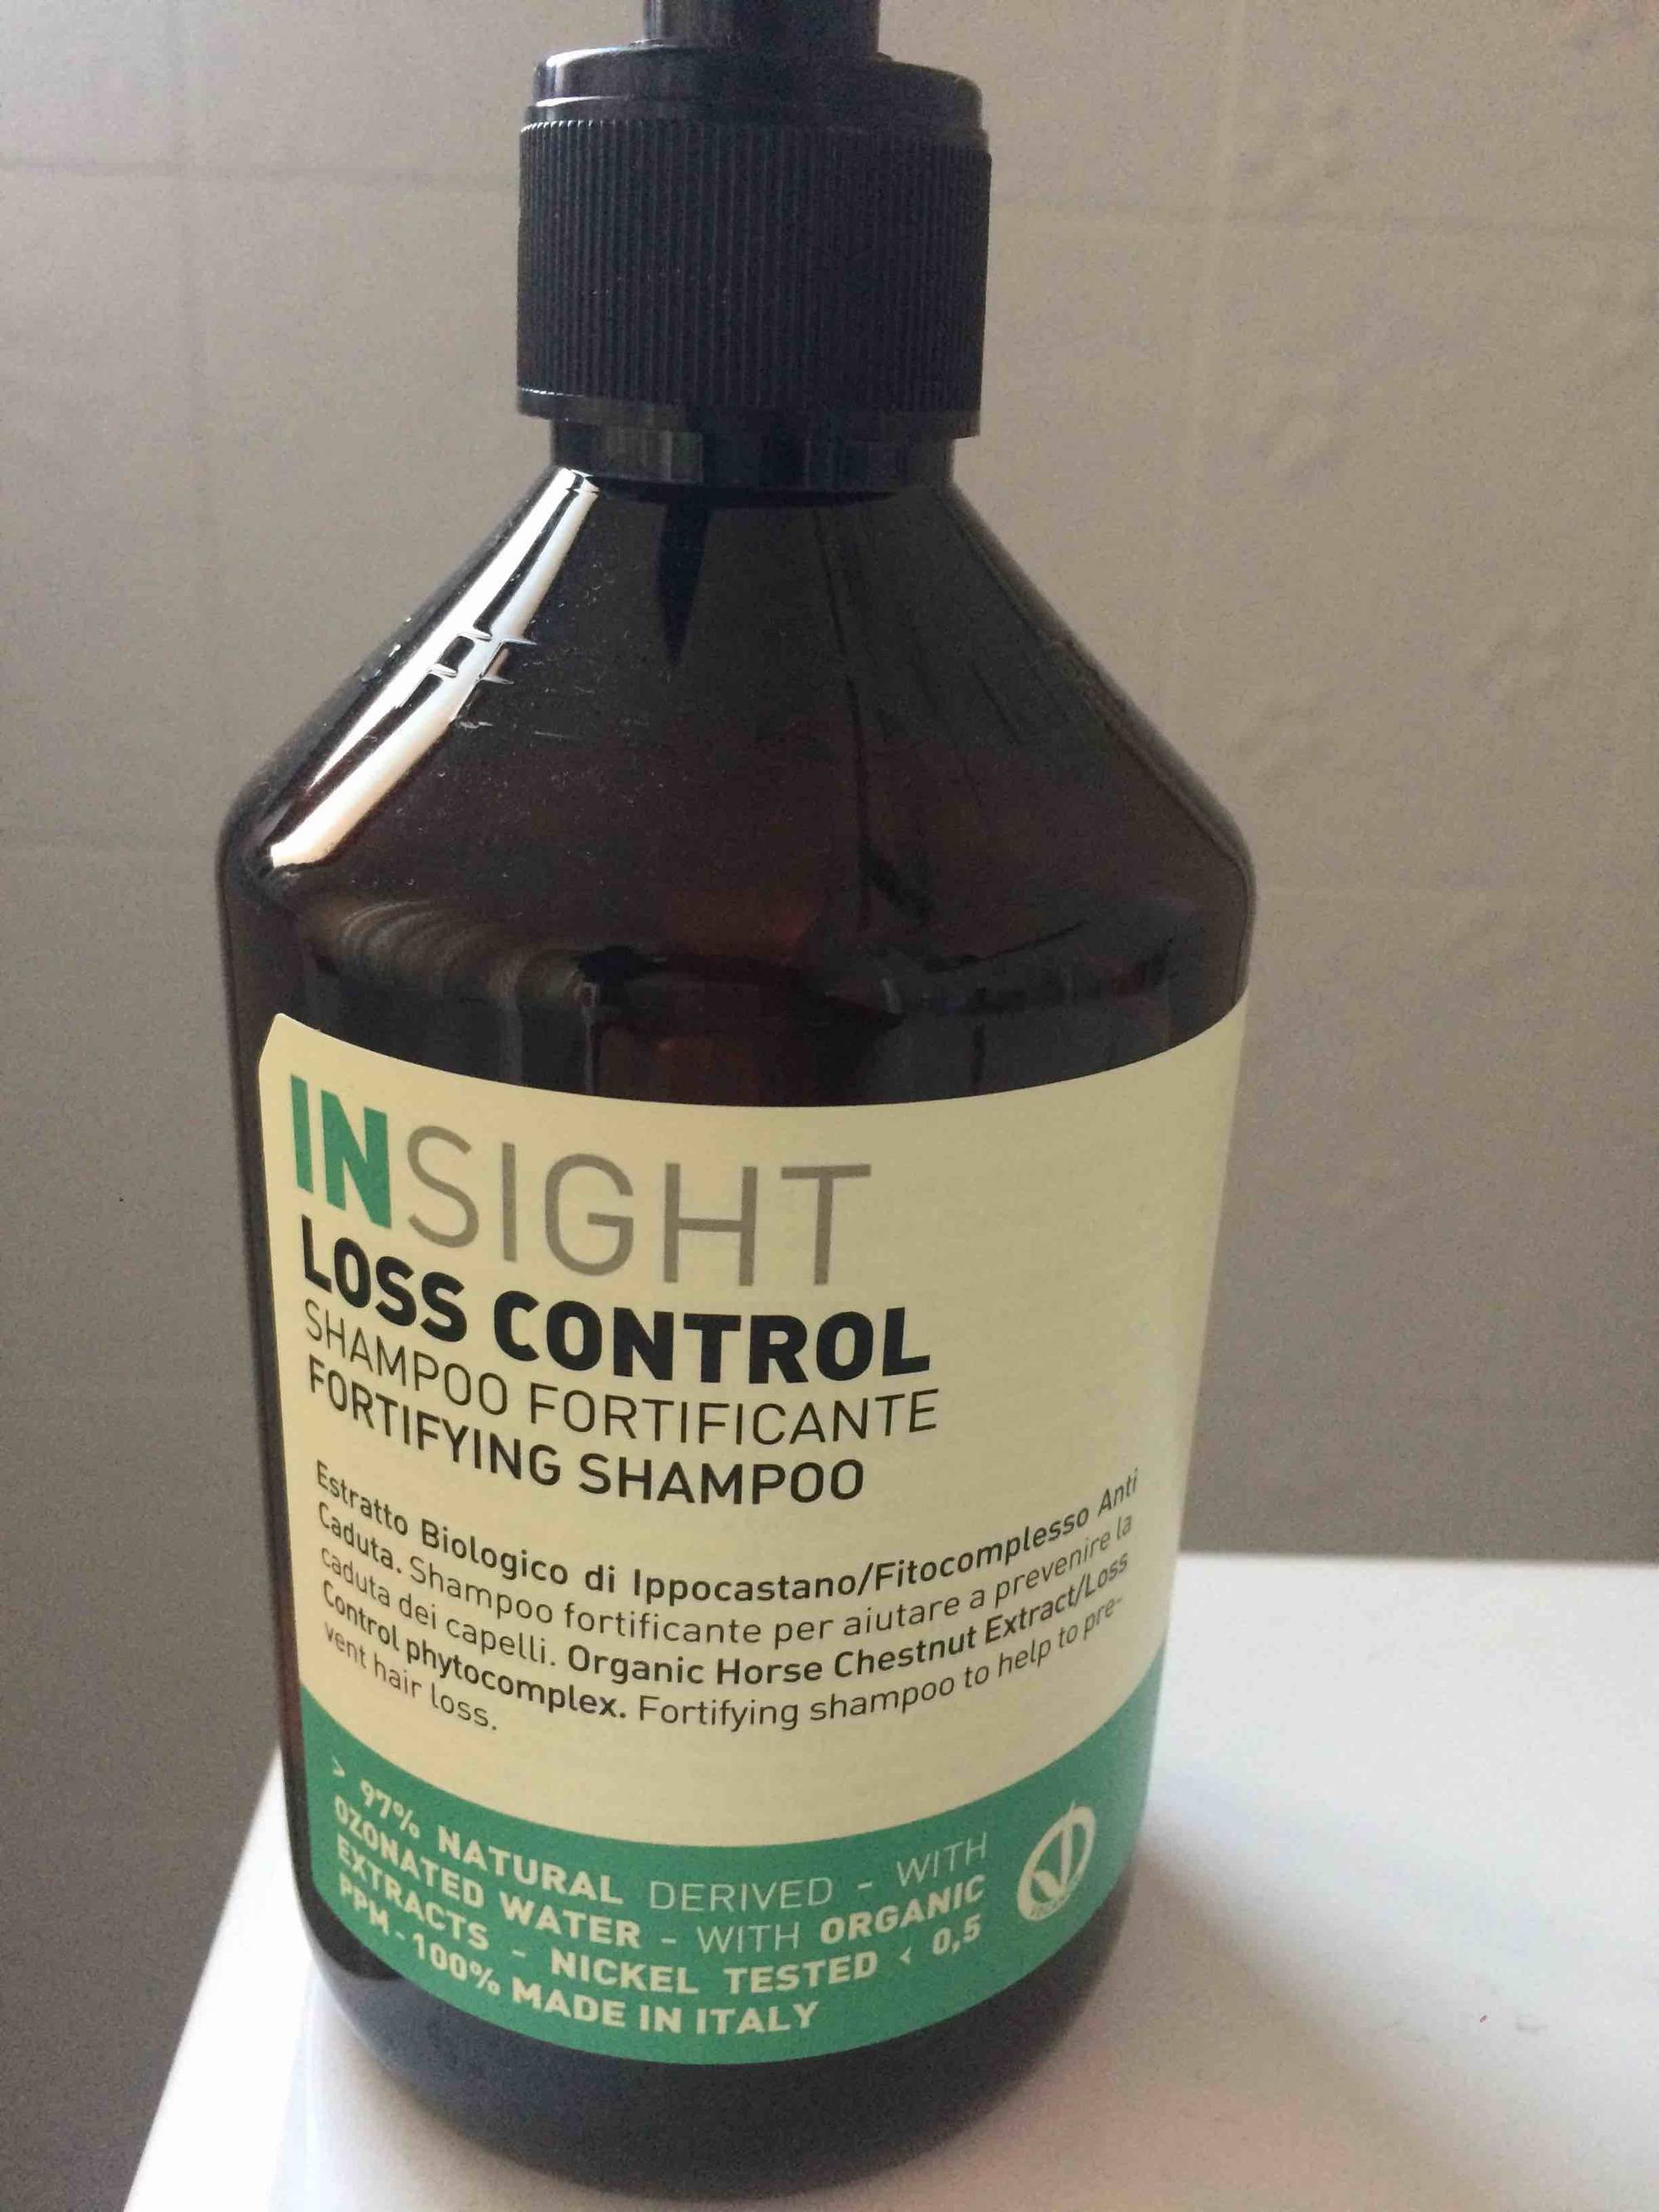 INSIGHT - Loss control - Shampoo fortificante